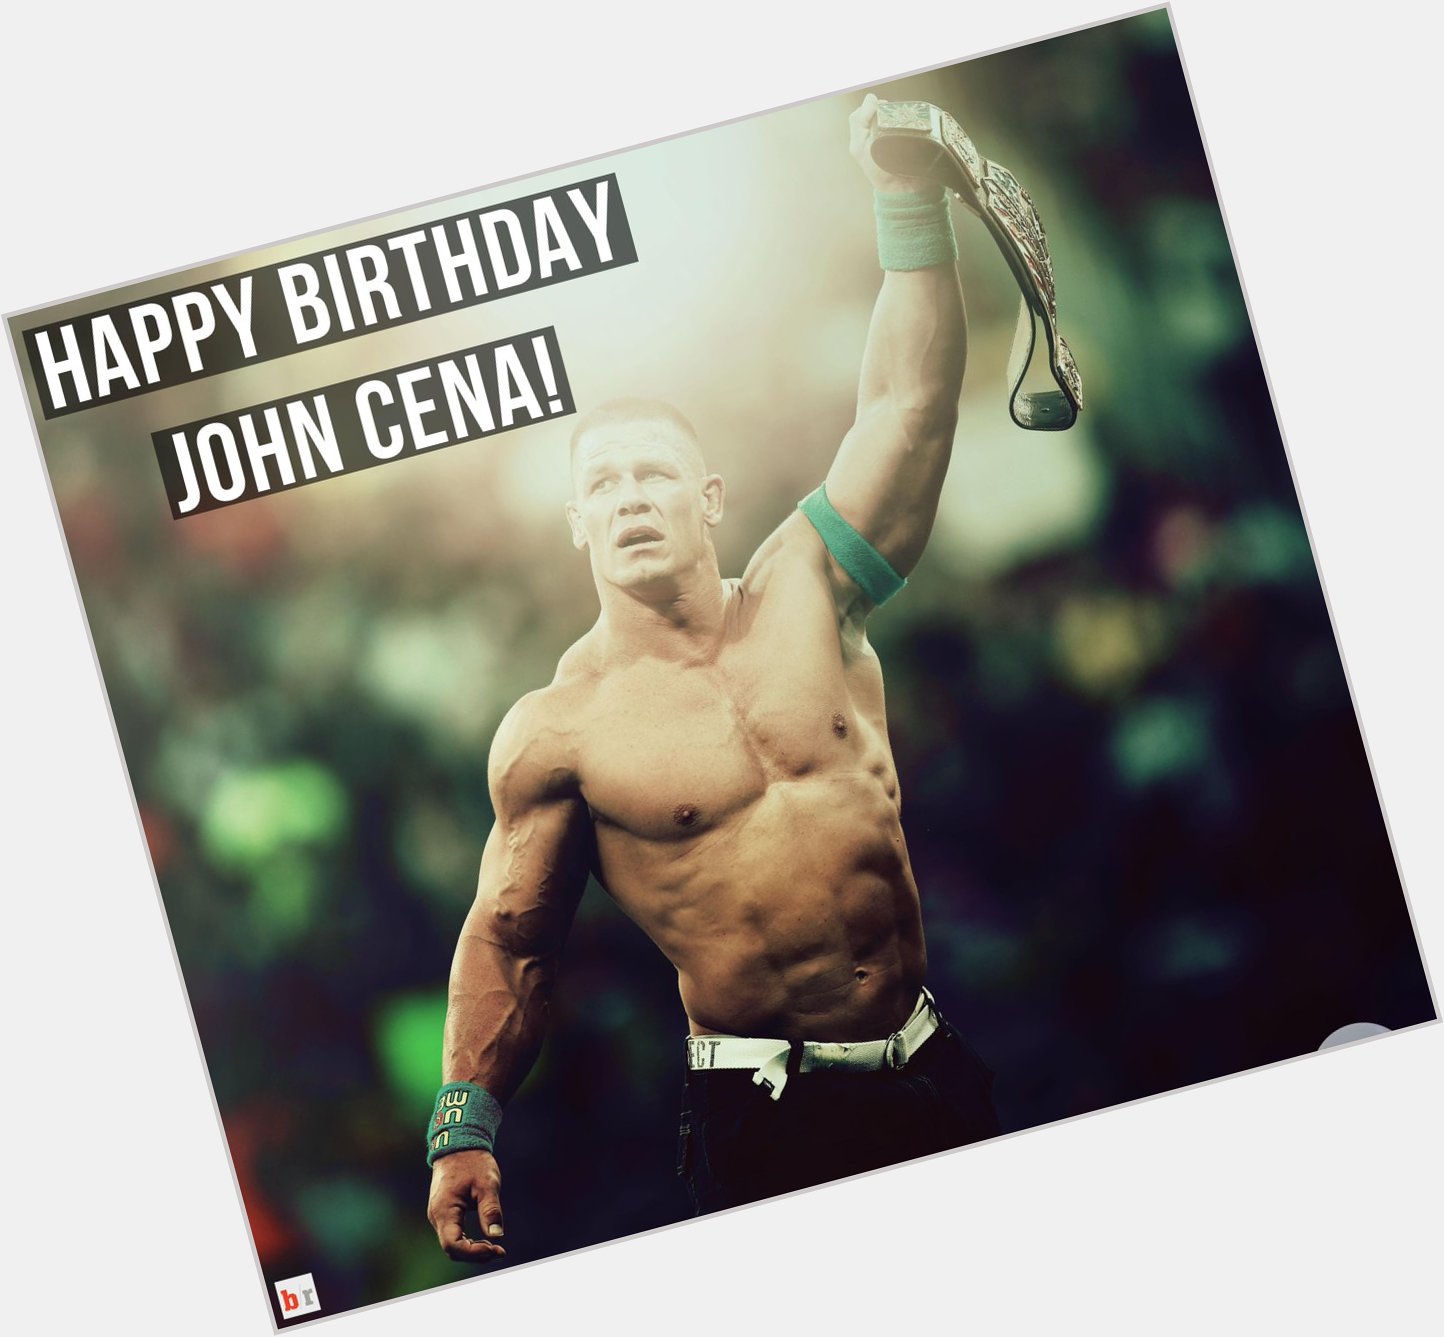 Happy 38th birthday to John Cena! 